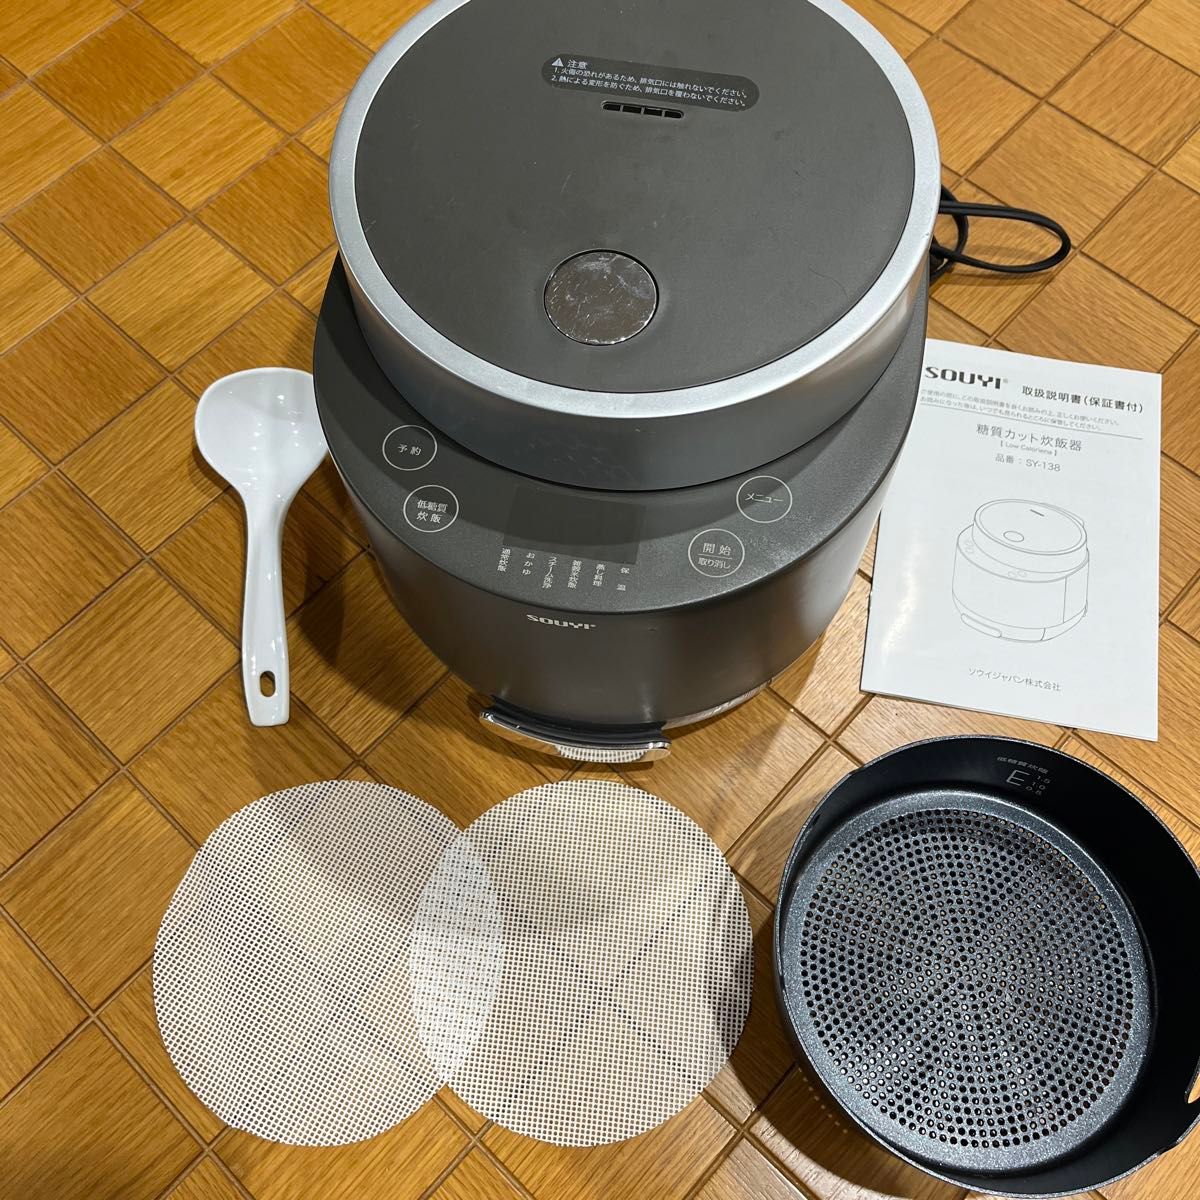 最高の ソウイジャパン糖質カット炊飯器 SY-138 炊飯器 生活家電